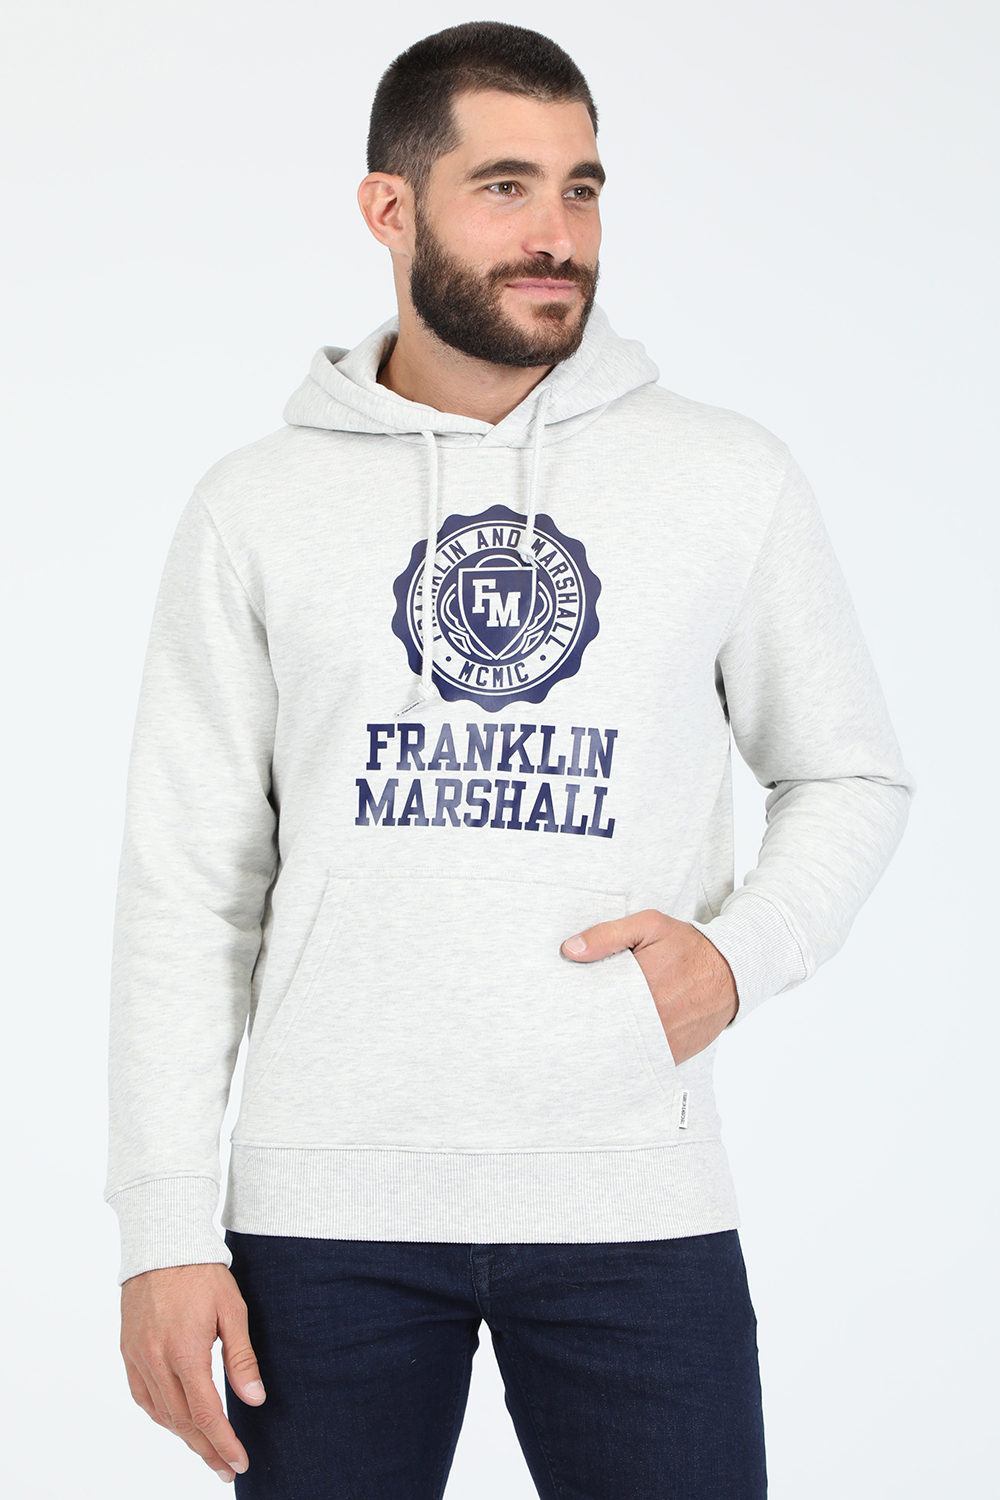 Ανδρικά/Ρούχα/Φούτερ/Μπλούζες FRANKLIN & MARSHALL - Ανδρική φούτερ μπλούζα FRANKLIN & MARSHALL BRUSHED γκρι